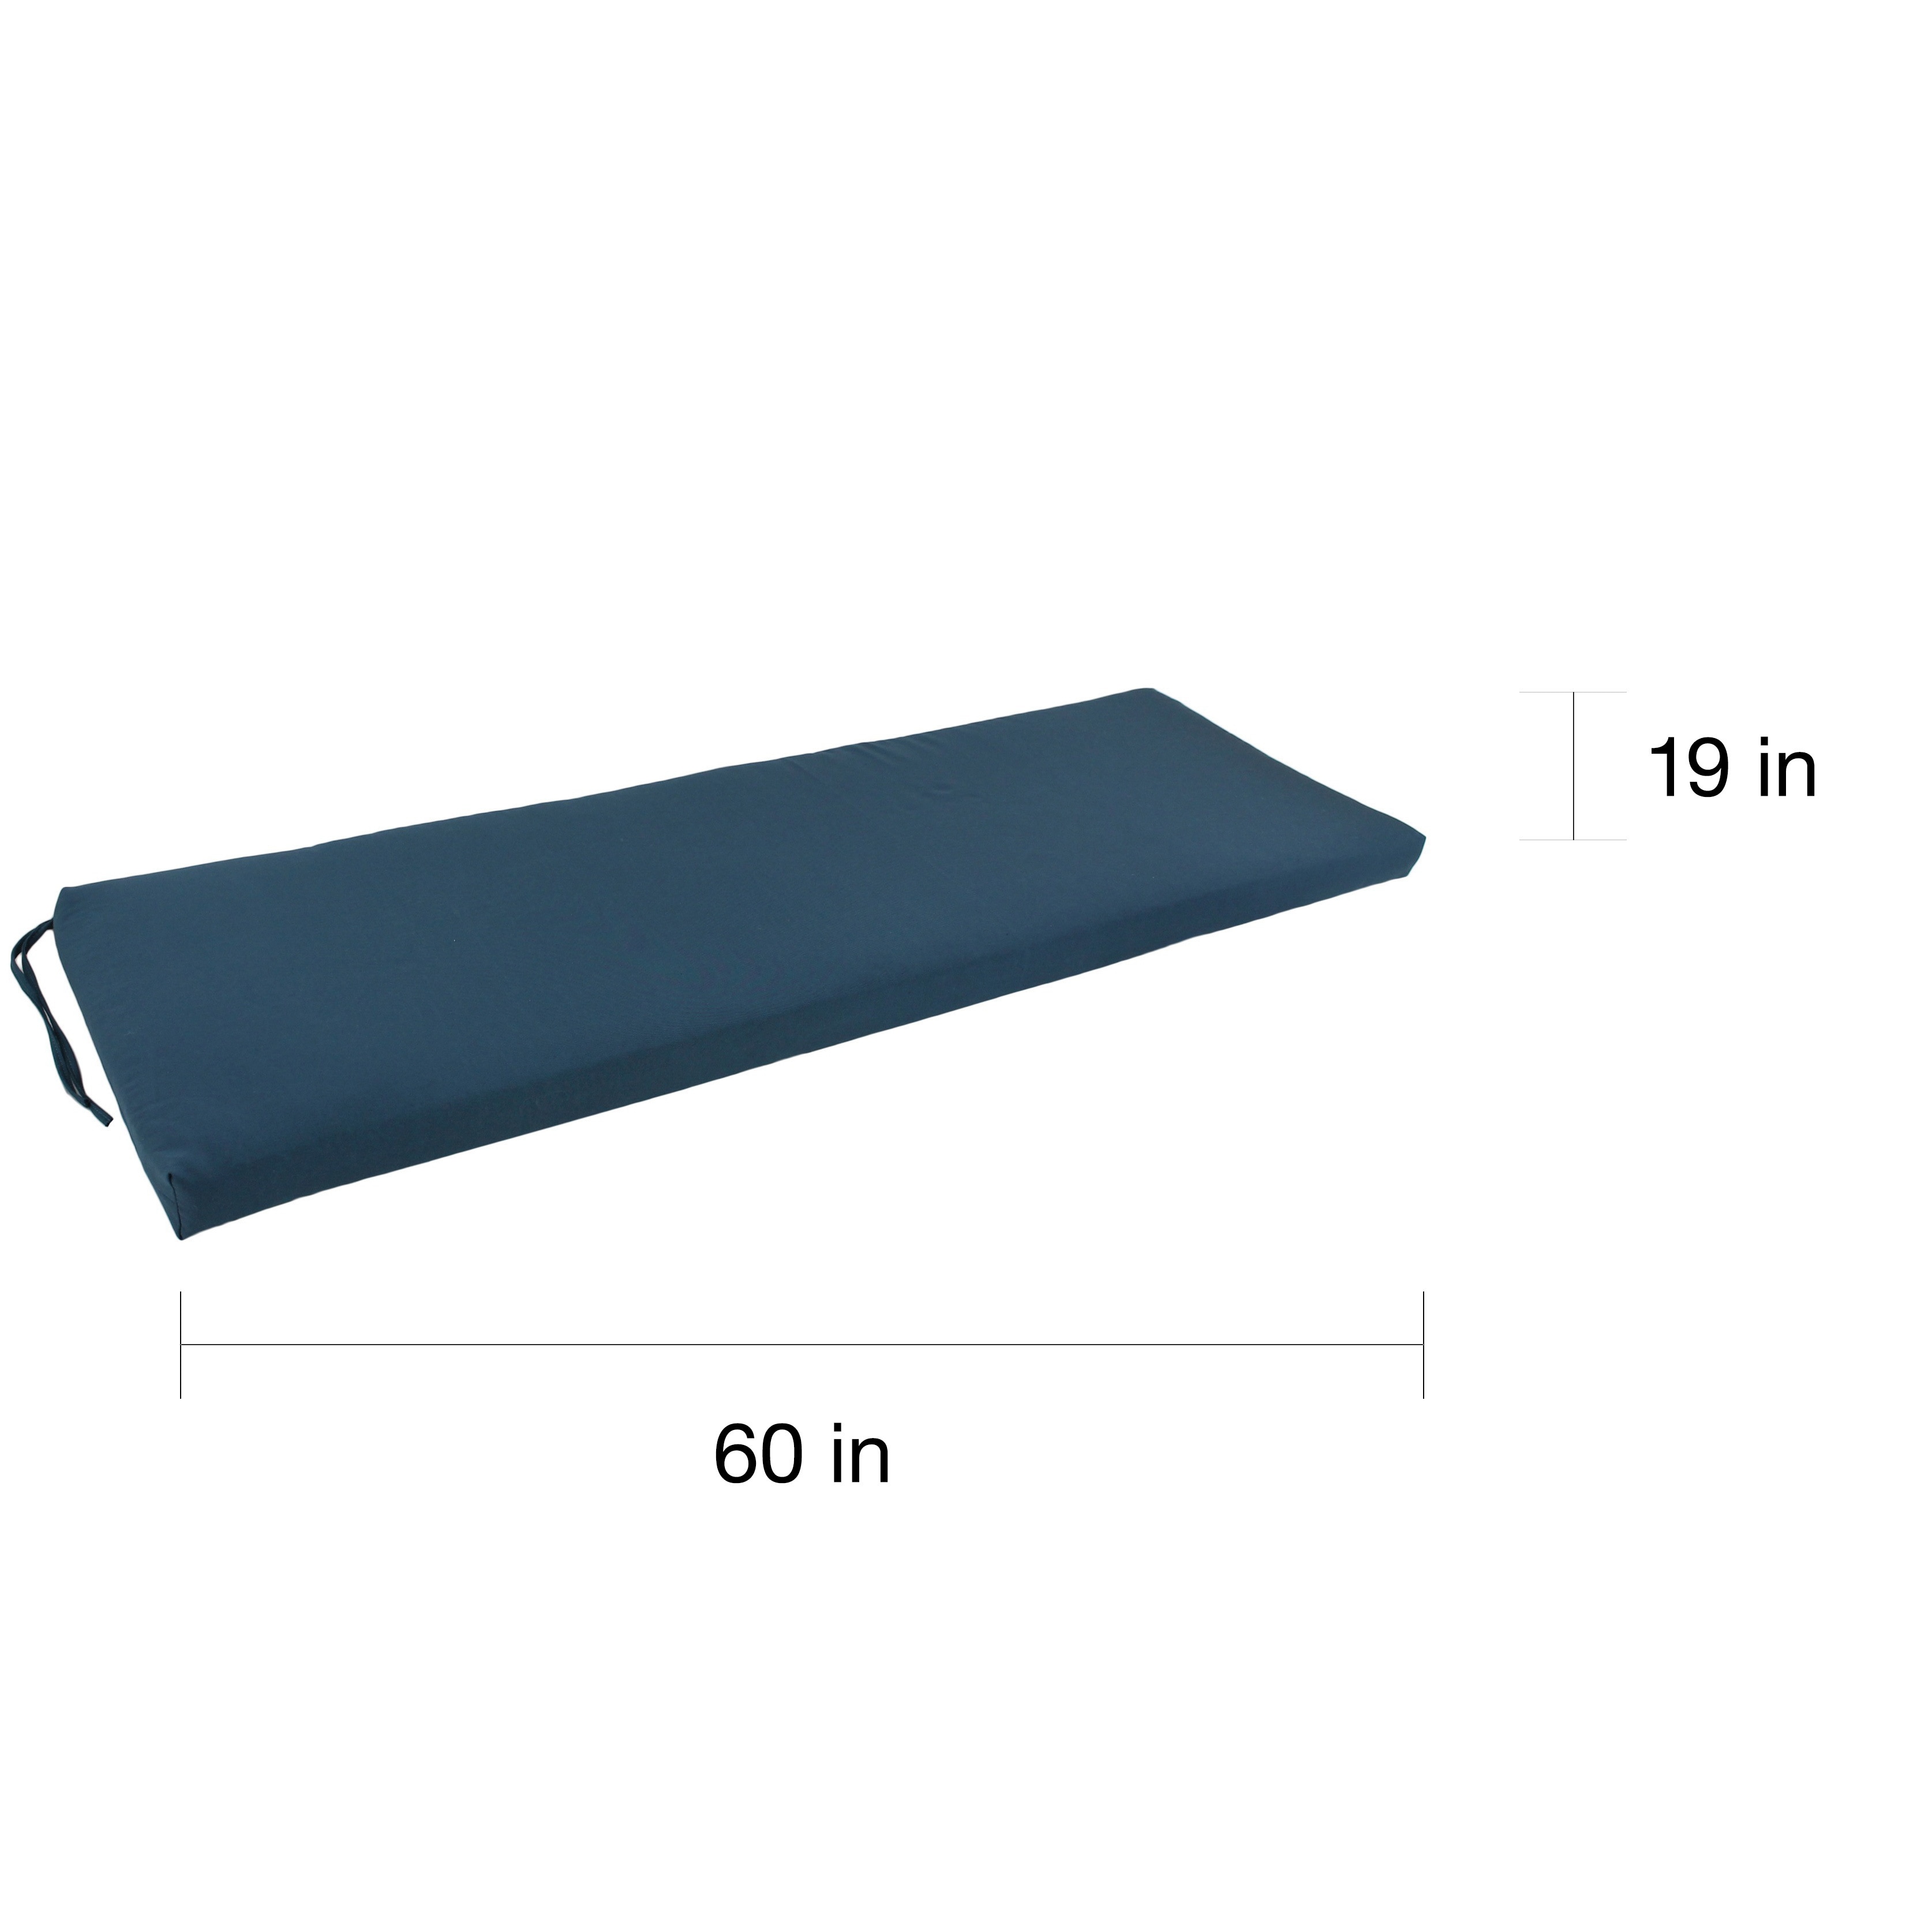 60-inch bench cushion walmart